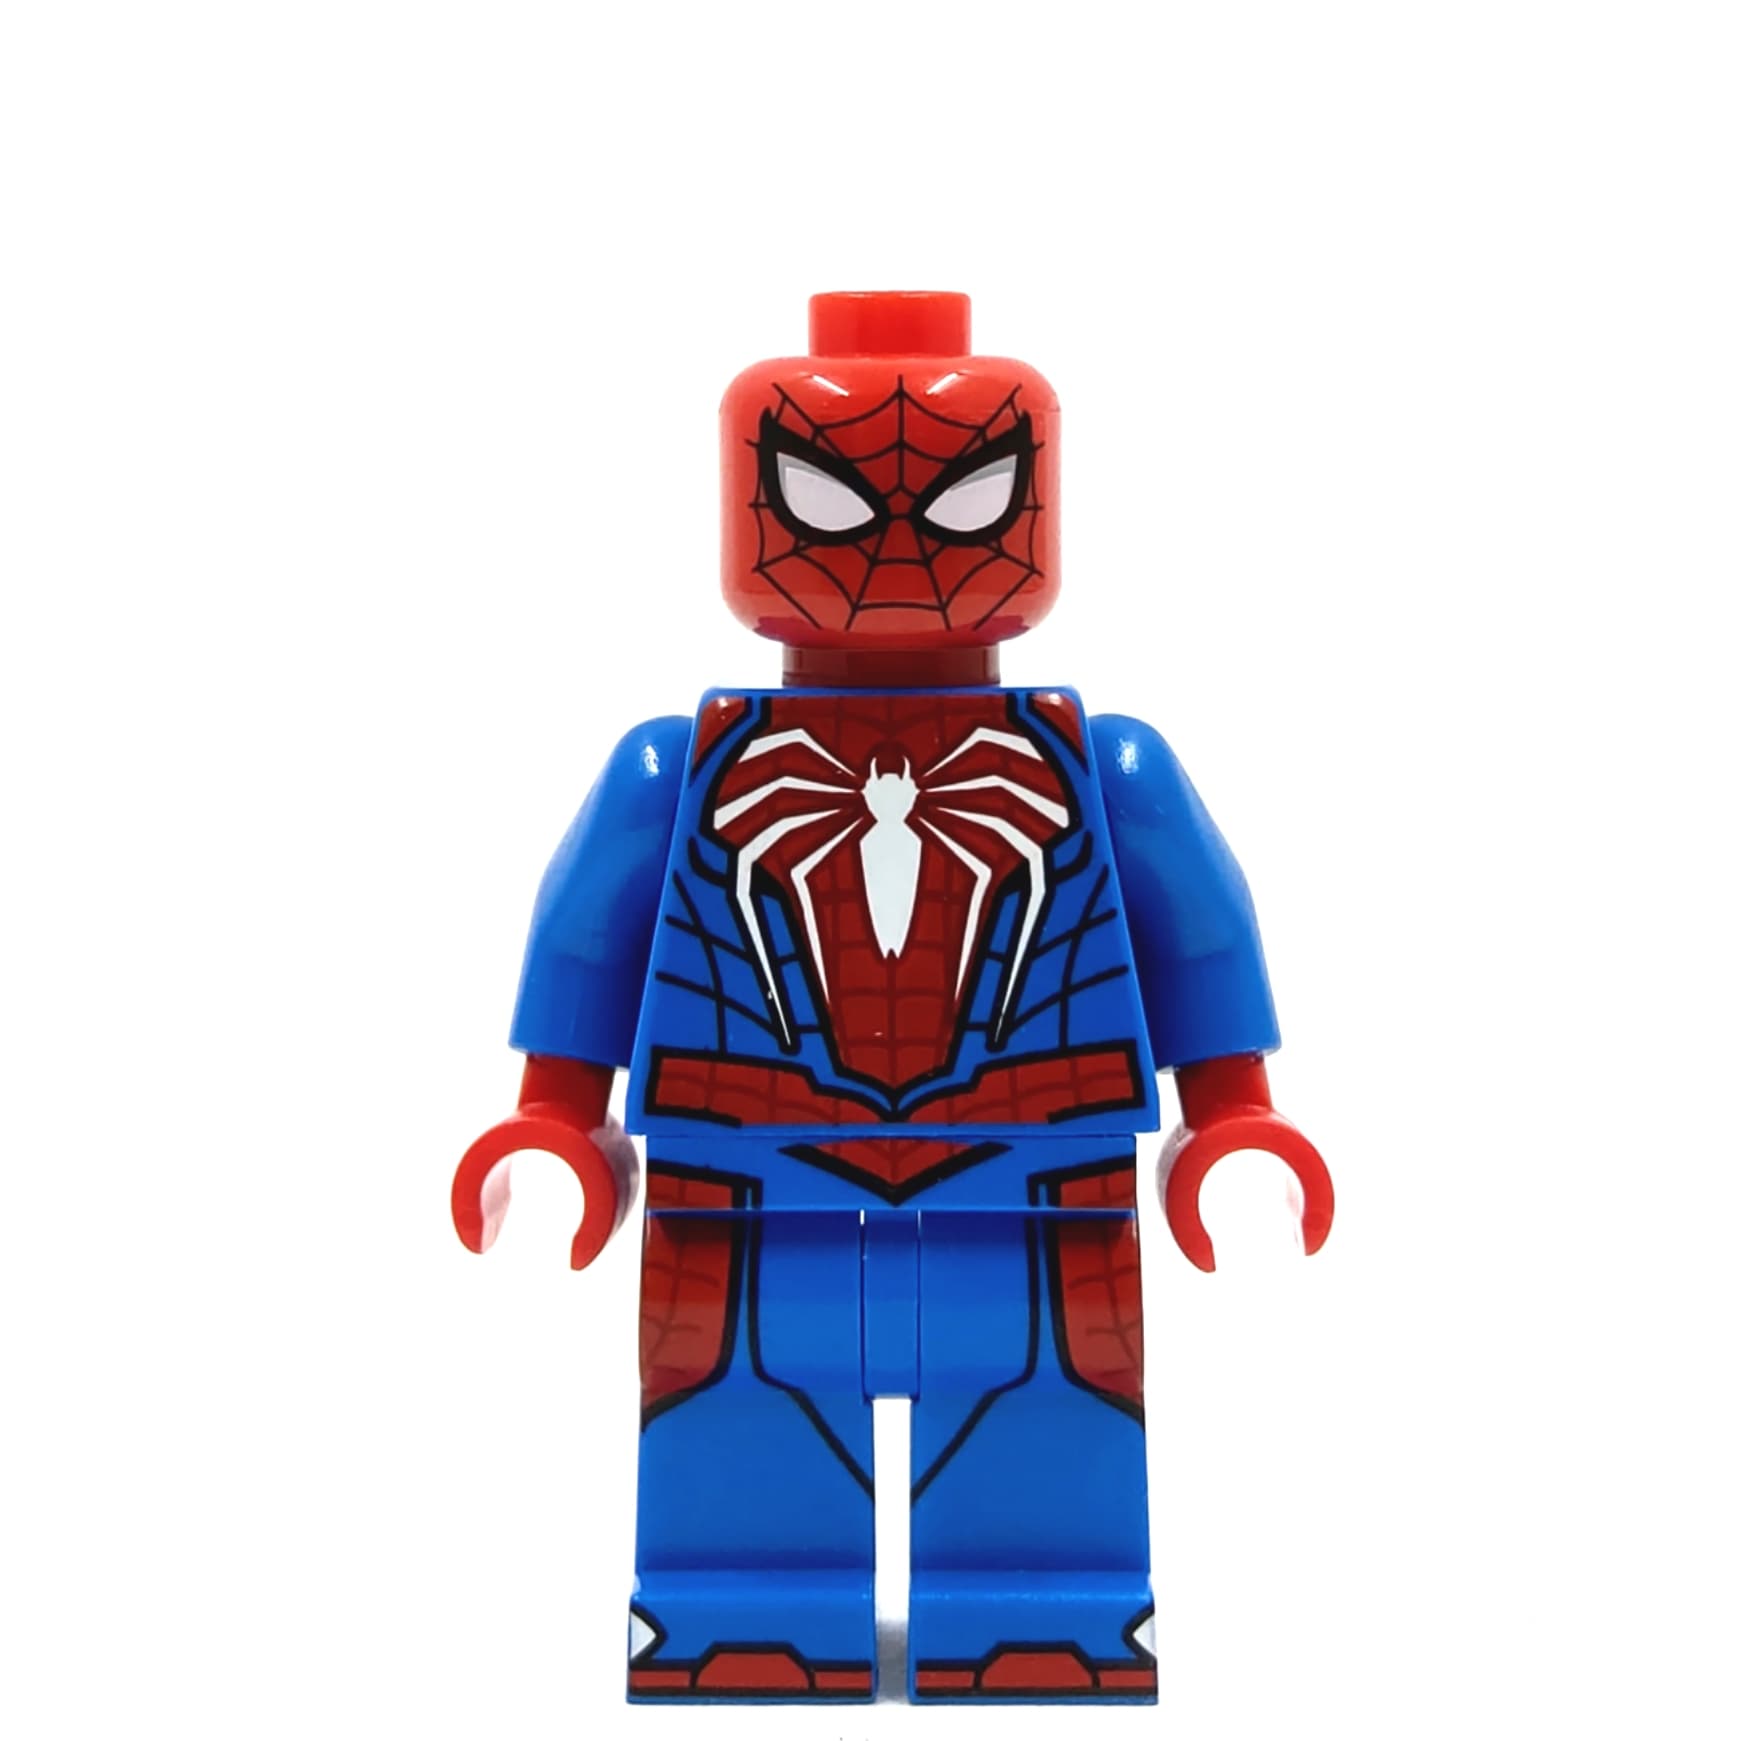 Spiderman - Tier One Bricks